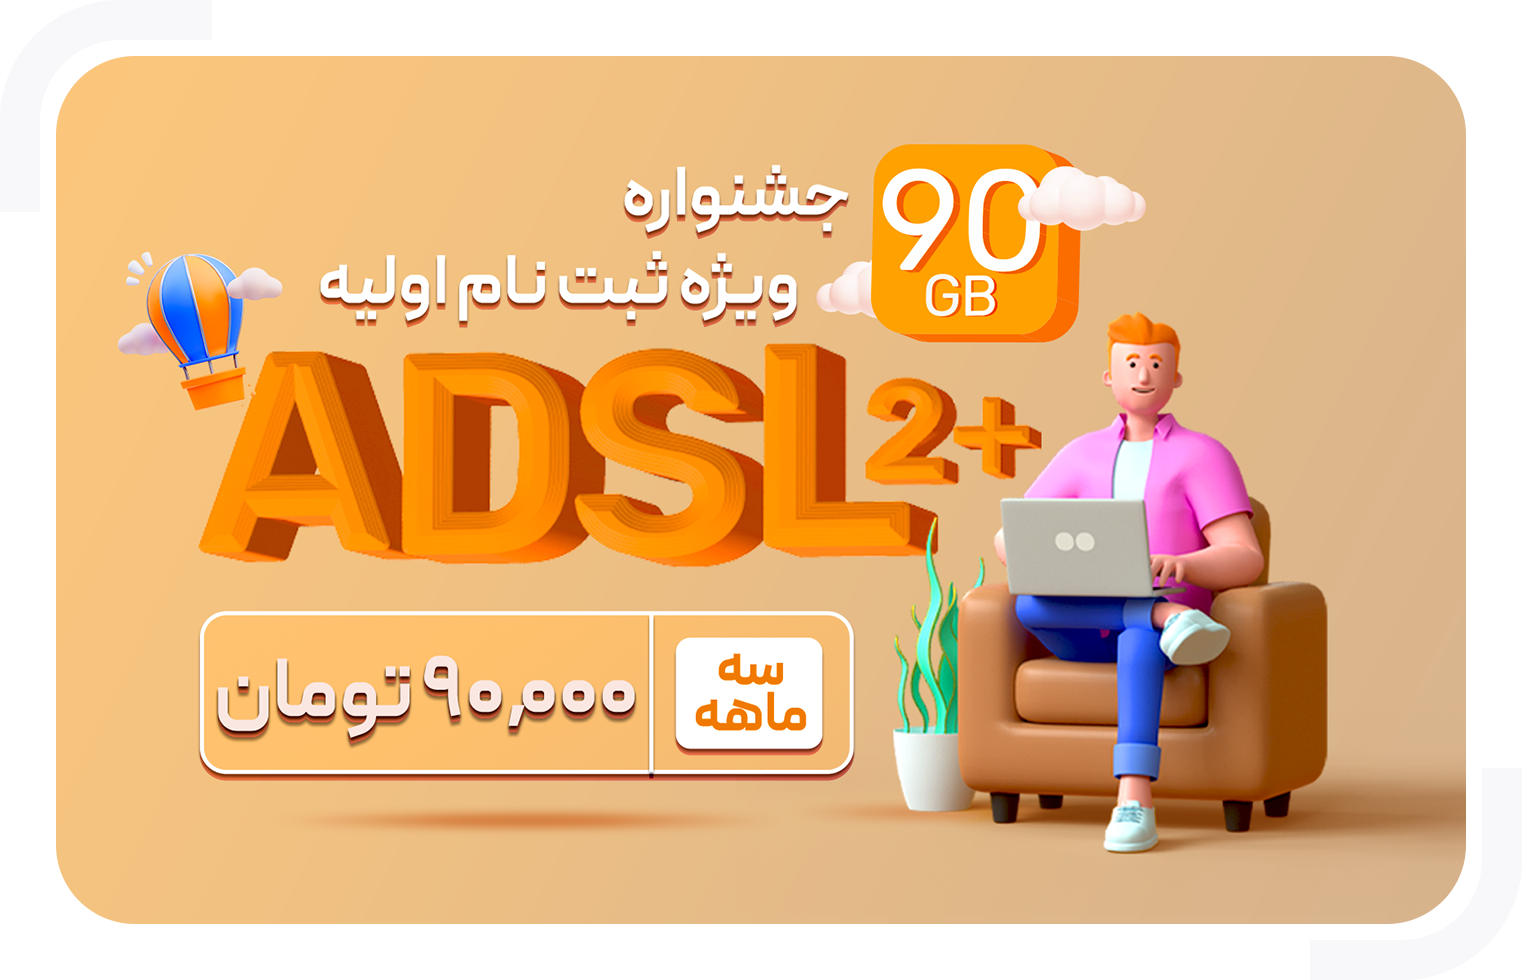 جشنواره مبناتلکام ADSL